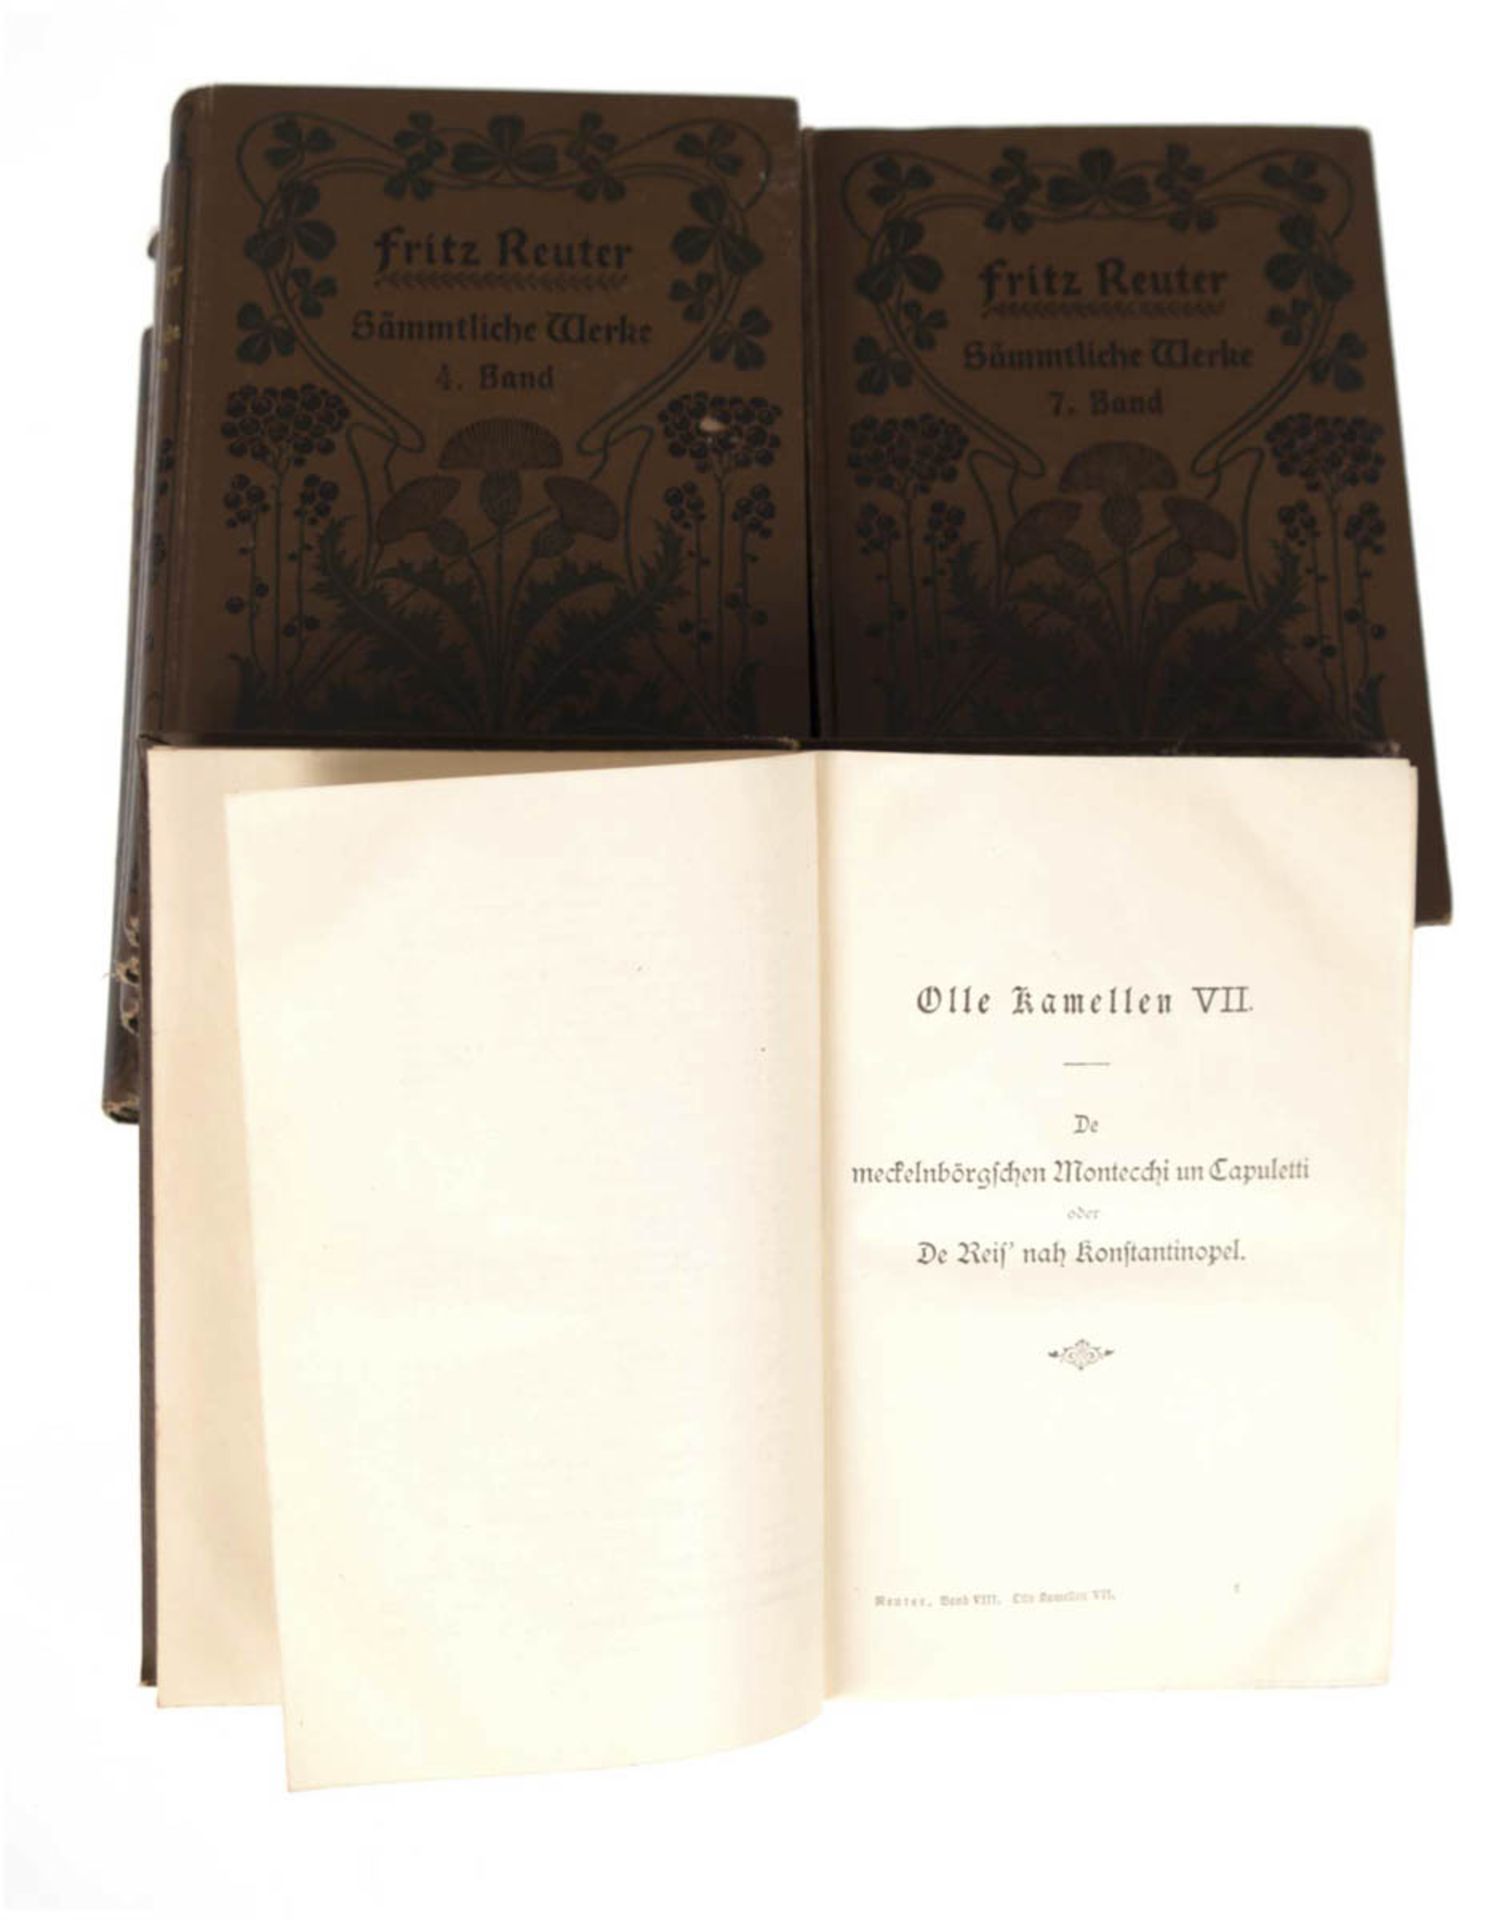 8 Bände "Fritz Reuters sämtliche Werke", Volksausgabe von 1902, brauner Leineneinband